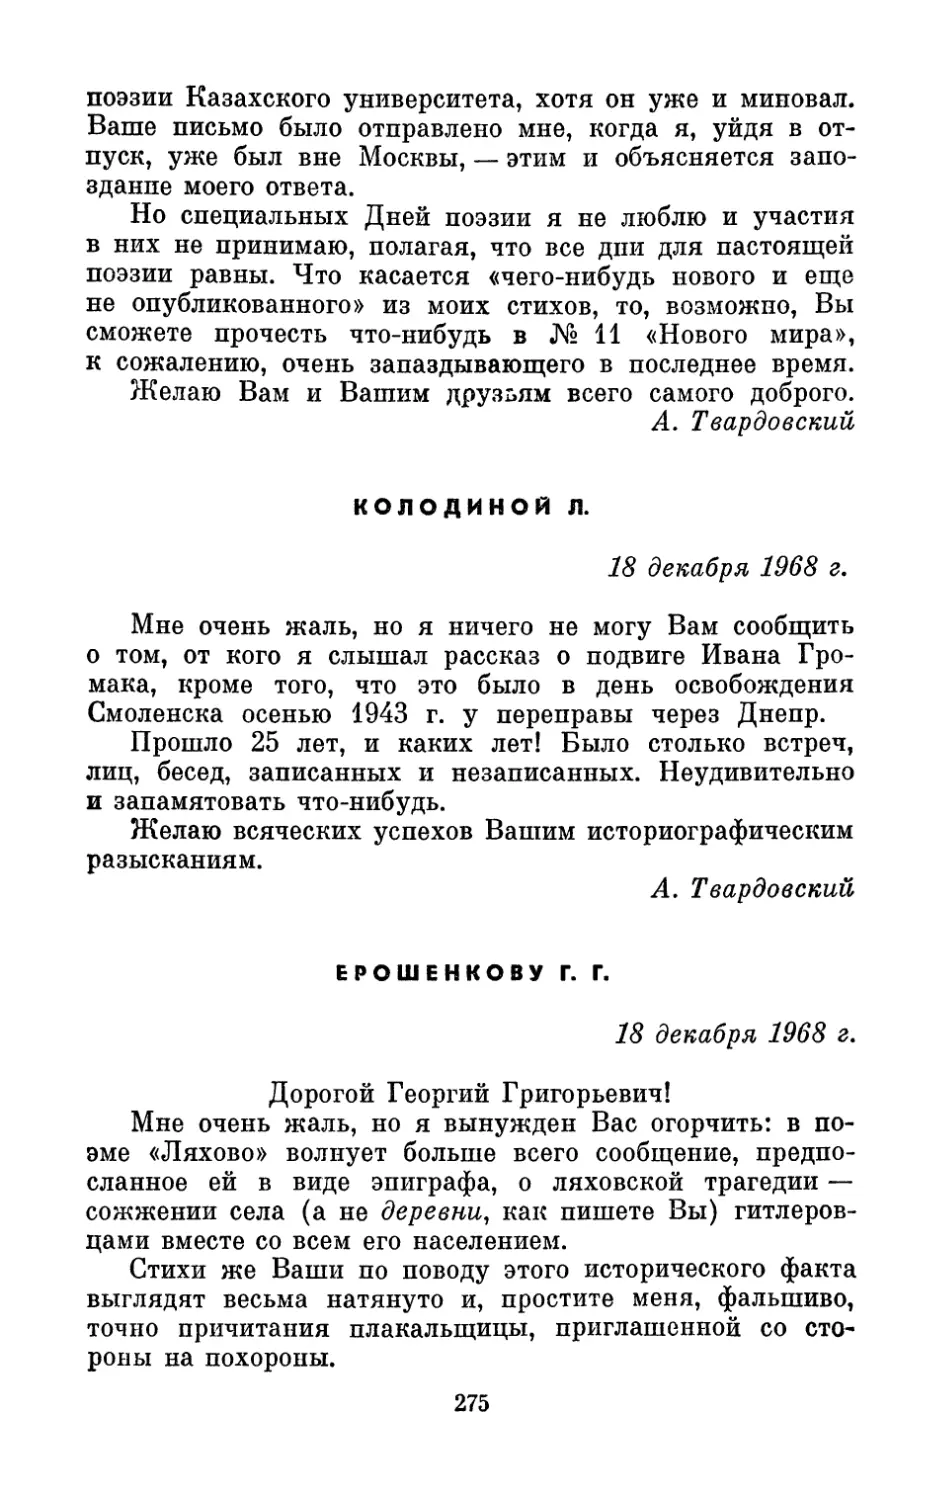 Колодиной Л., 18 декабря, 1968 г.
Ерошенкову Г. Г., 18 декабря 1968 г.